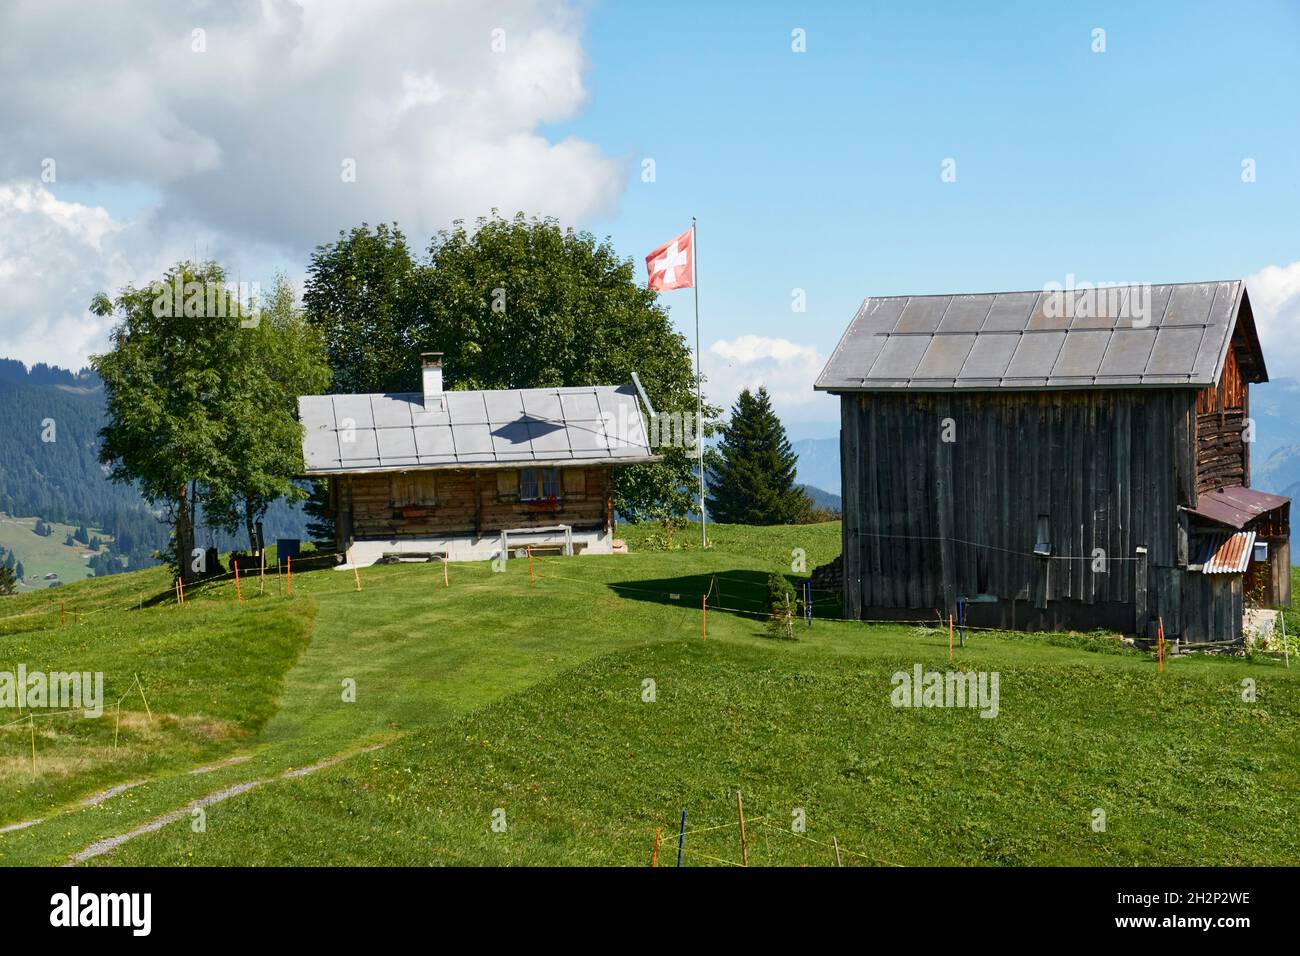 Chalet avec Un drapeau suisse et une ancienne Grange de foin sur Une pelouse verte.Dans les nuages d'arrière-plan et ciel bleu.Surselva Grisons Suisse Banque D'Images